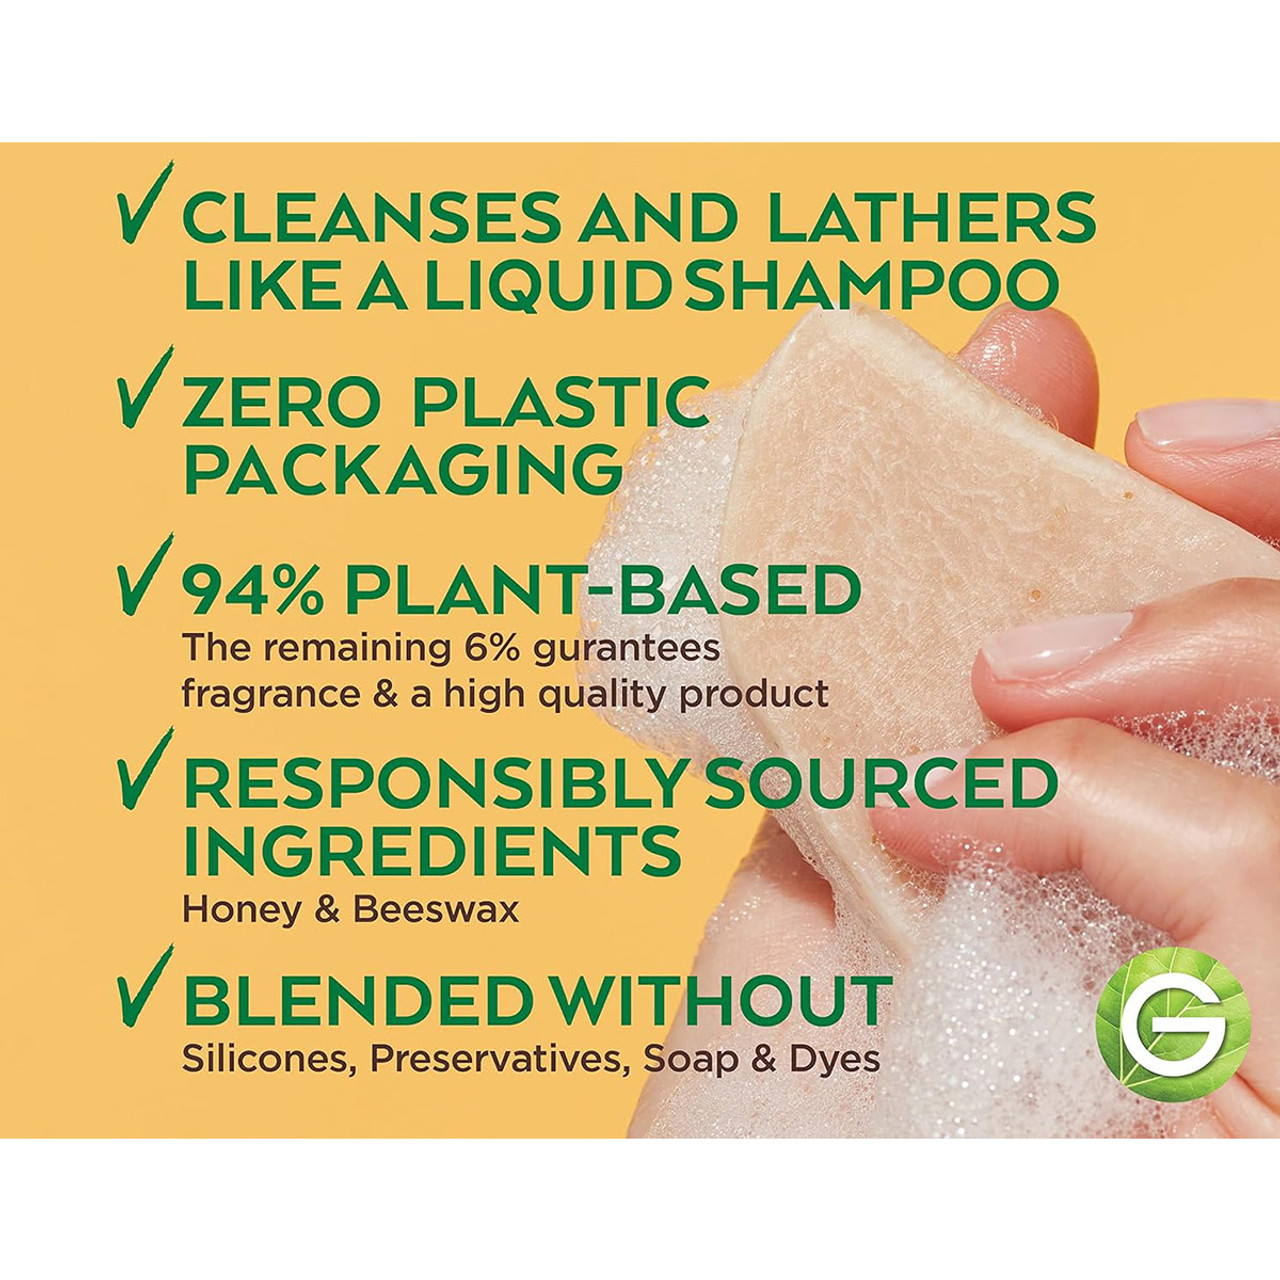 Garnier® Whole Blends Plant-Based Restoring Shampoo Bar, 2 oz. (2-Pack) product image